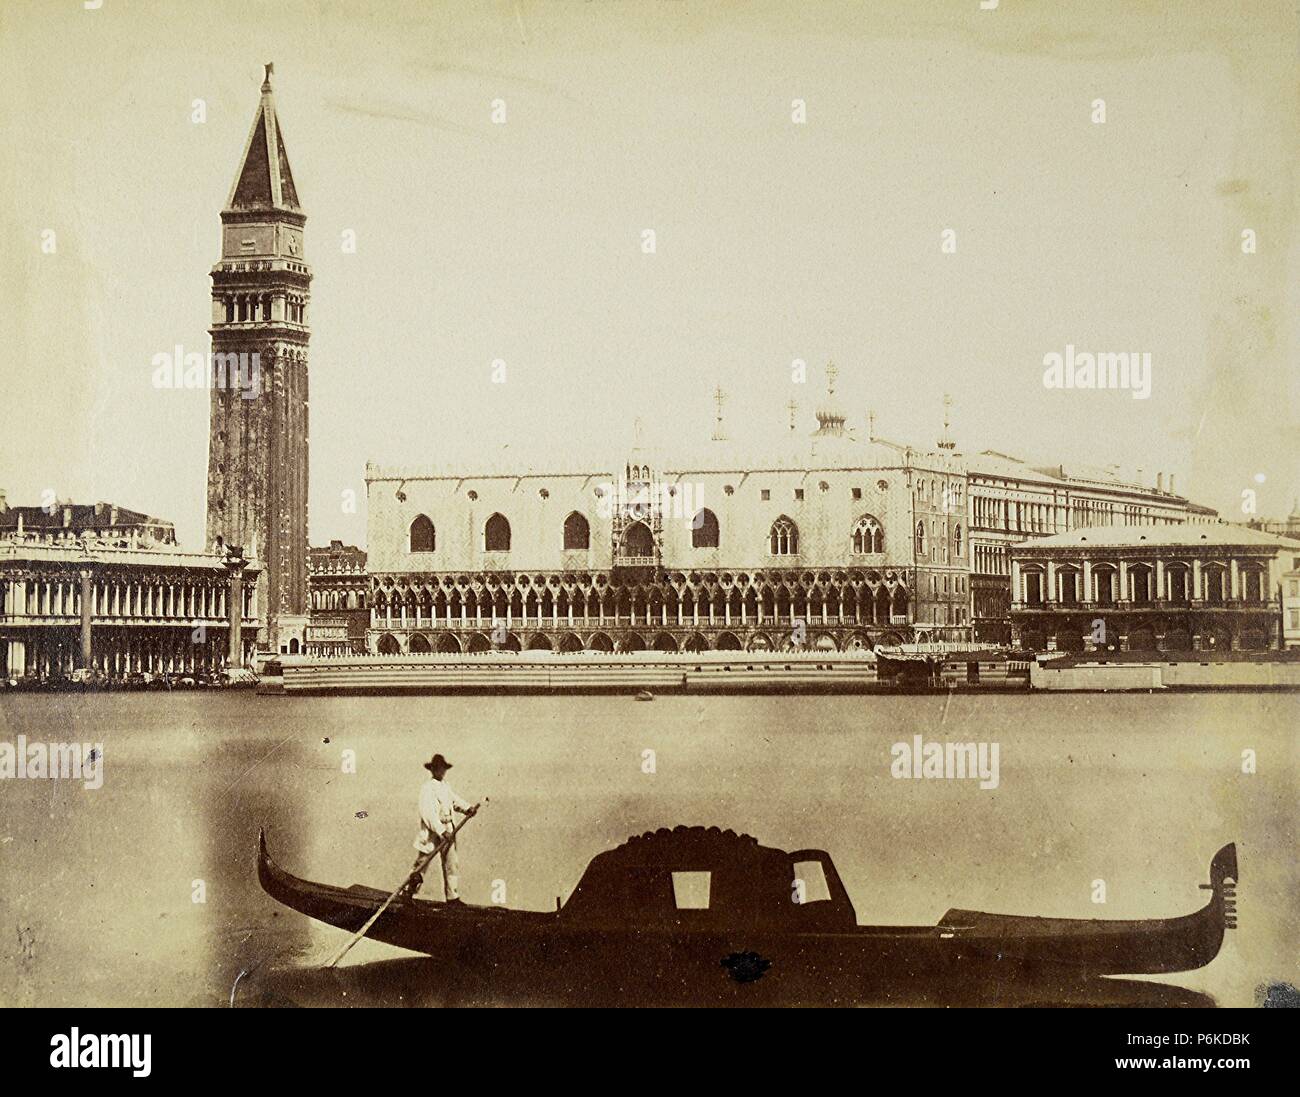 Venecia, la góndola y el Palacio Ducal. Foto de stock